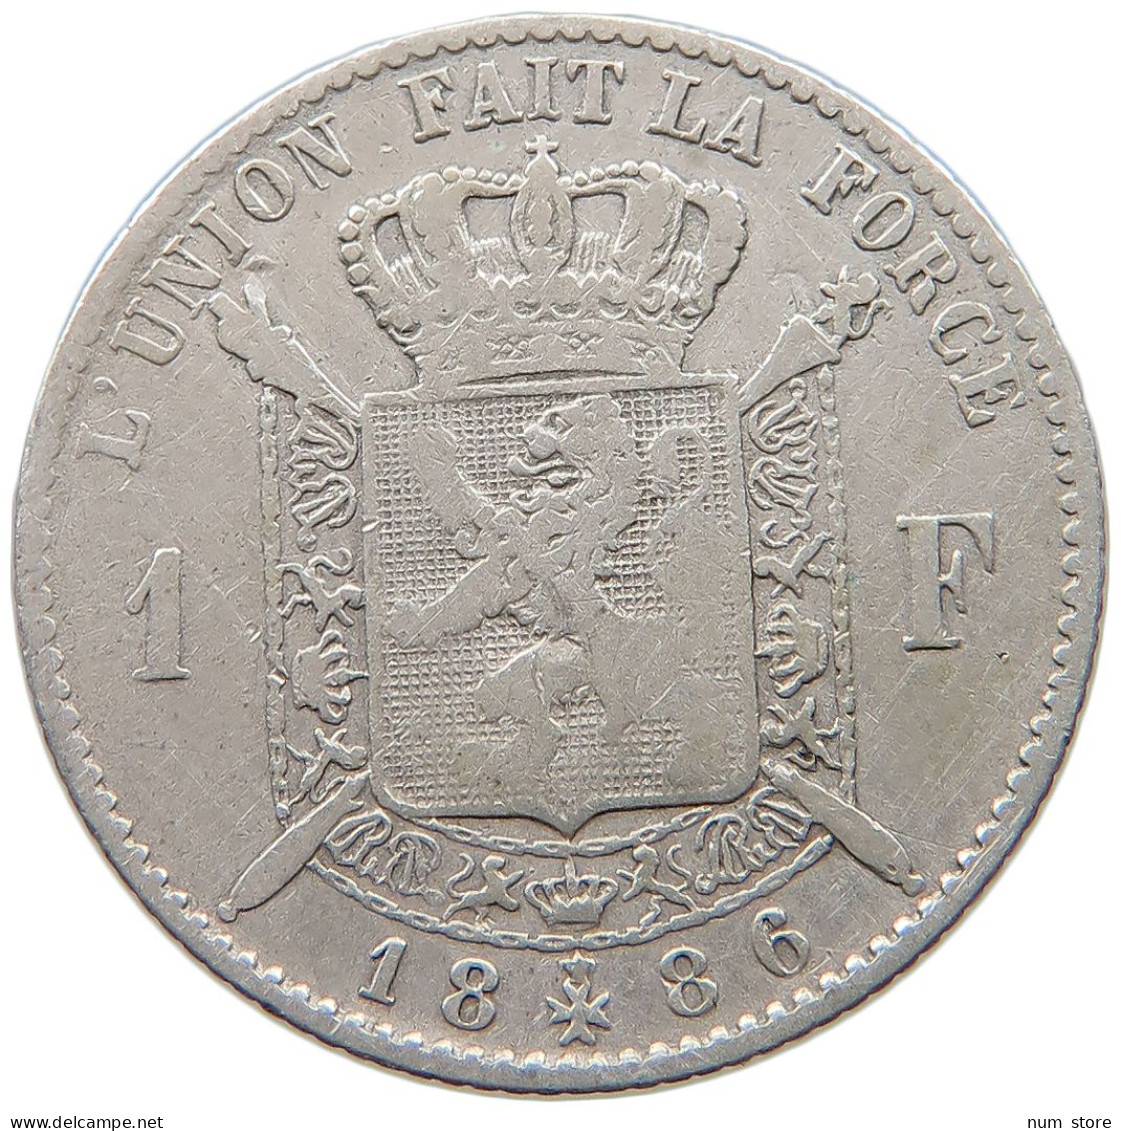 BELGIUM FRANC 1886 Leopold II. 1865-1909 #a033 0437 - 1 Franco